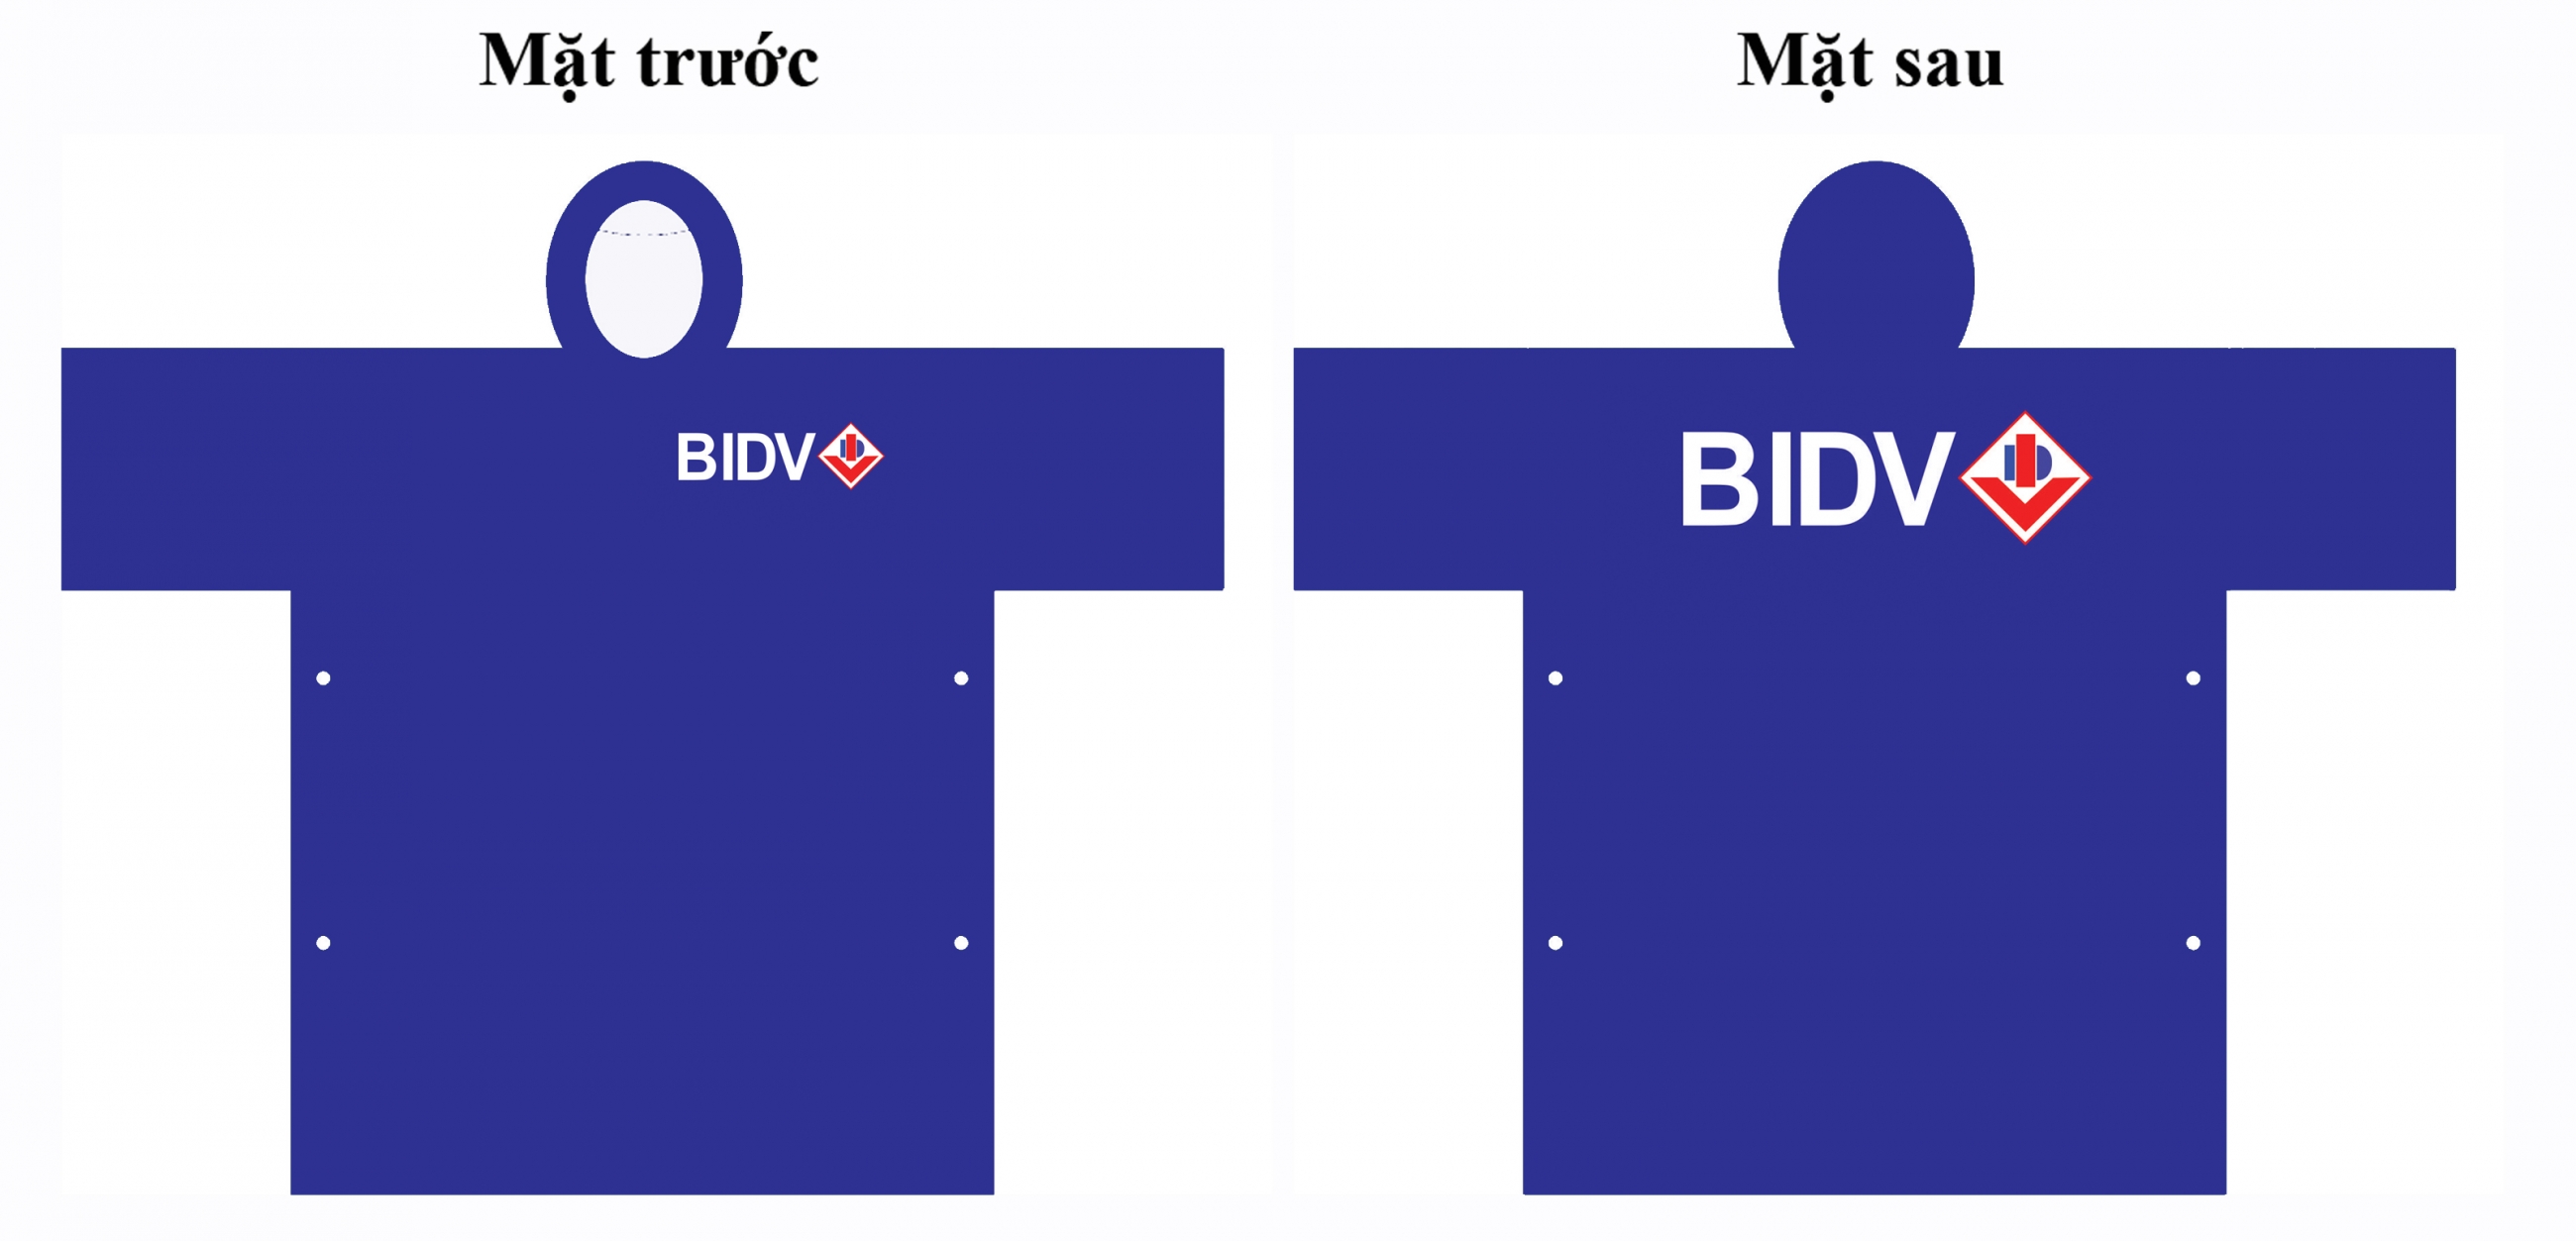 Áo mưa quảng cáo BIDV